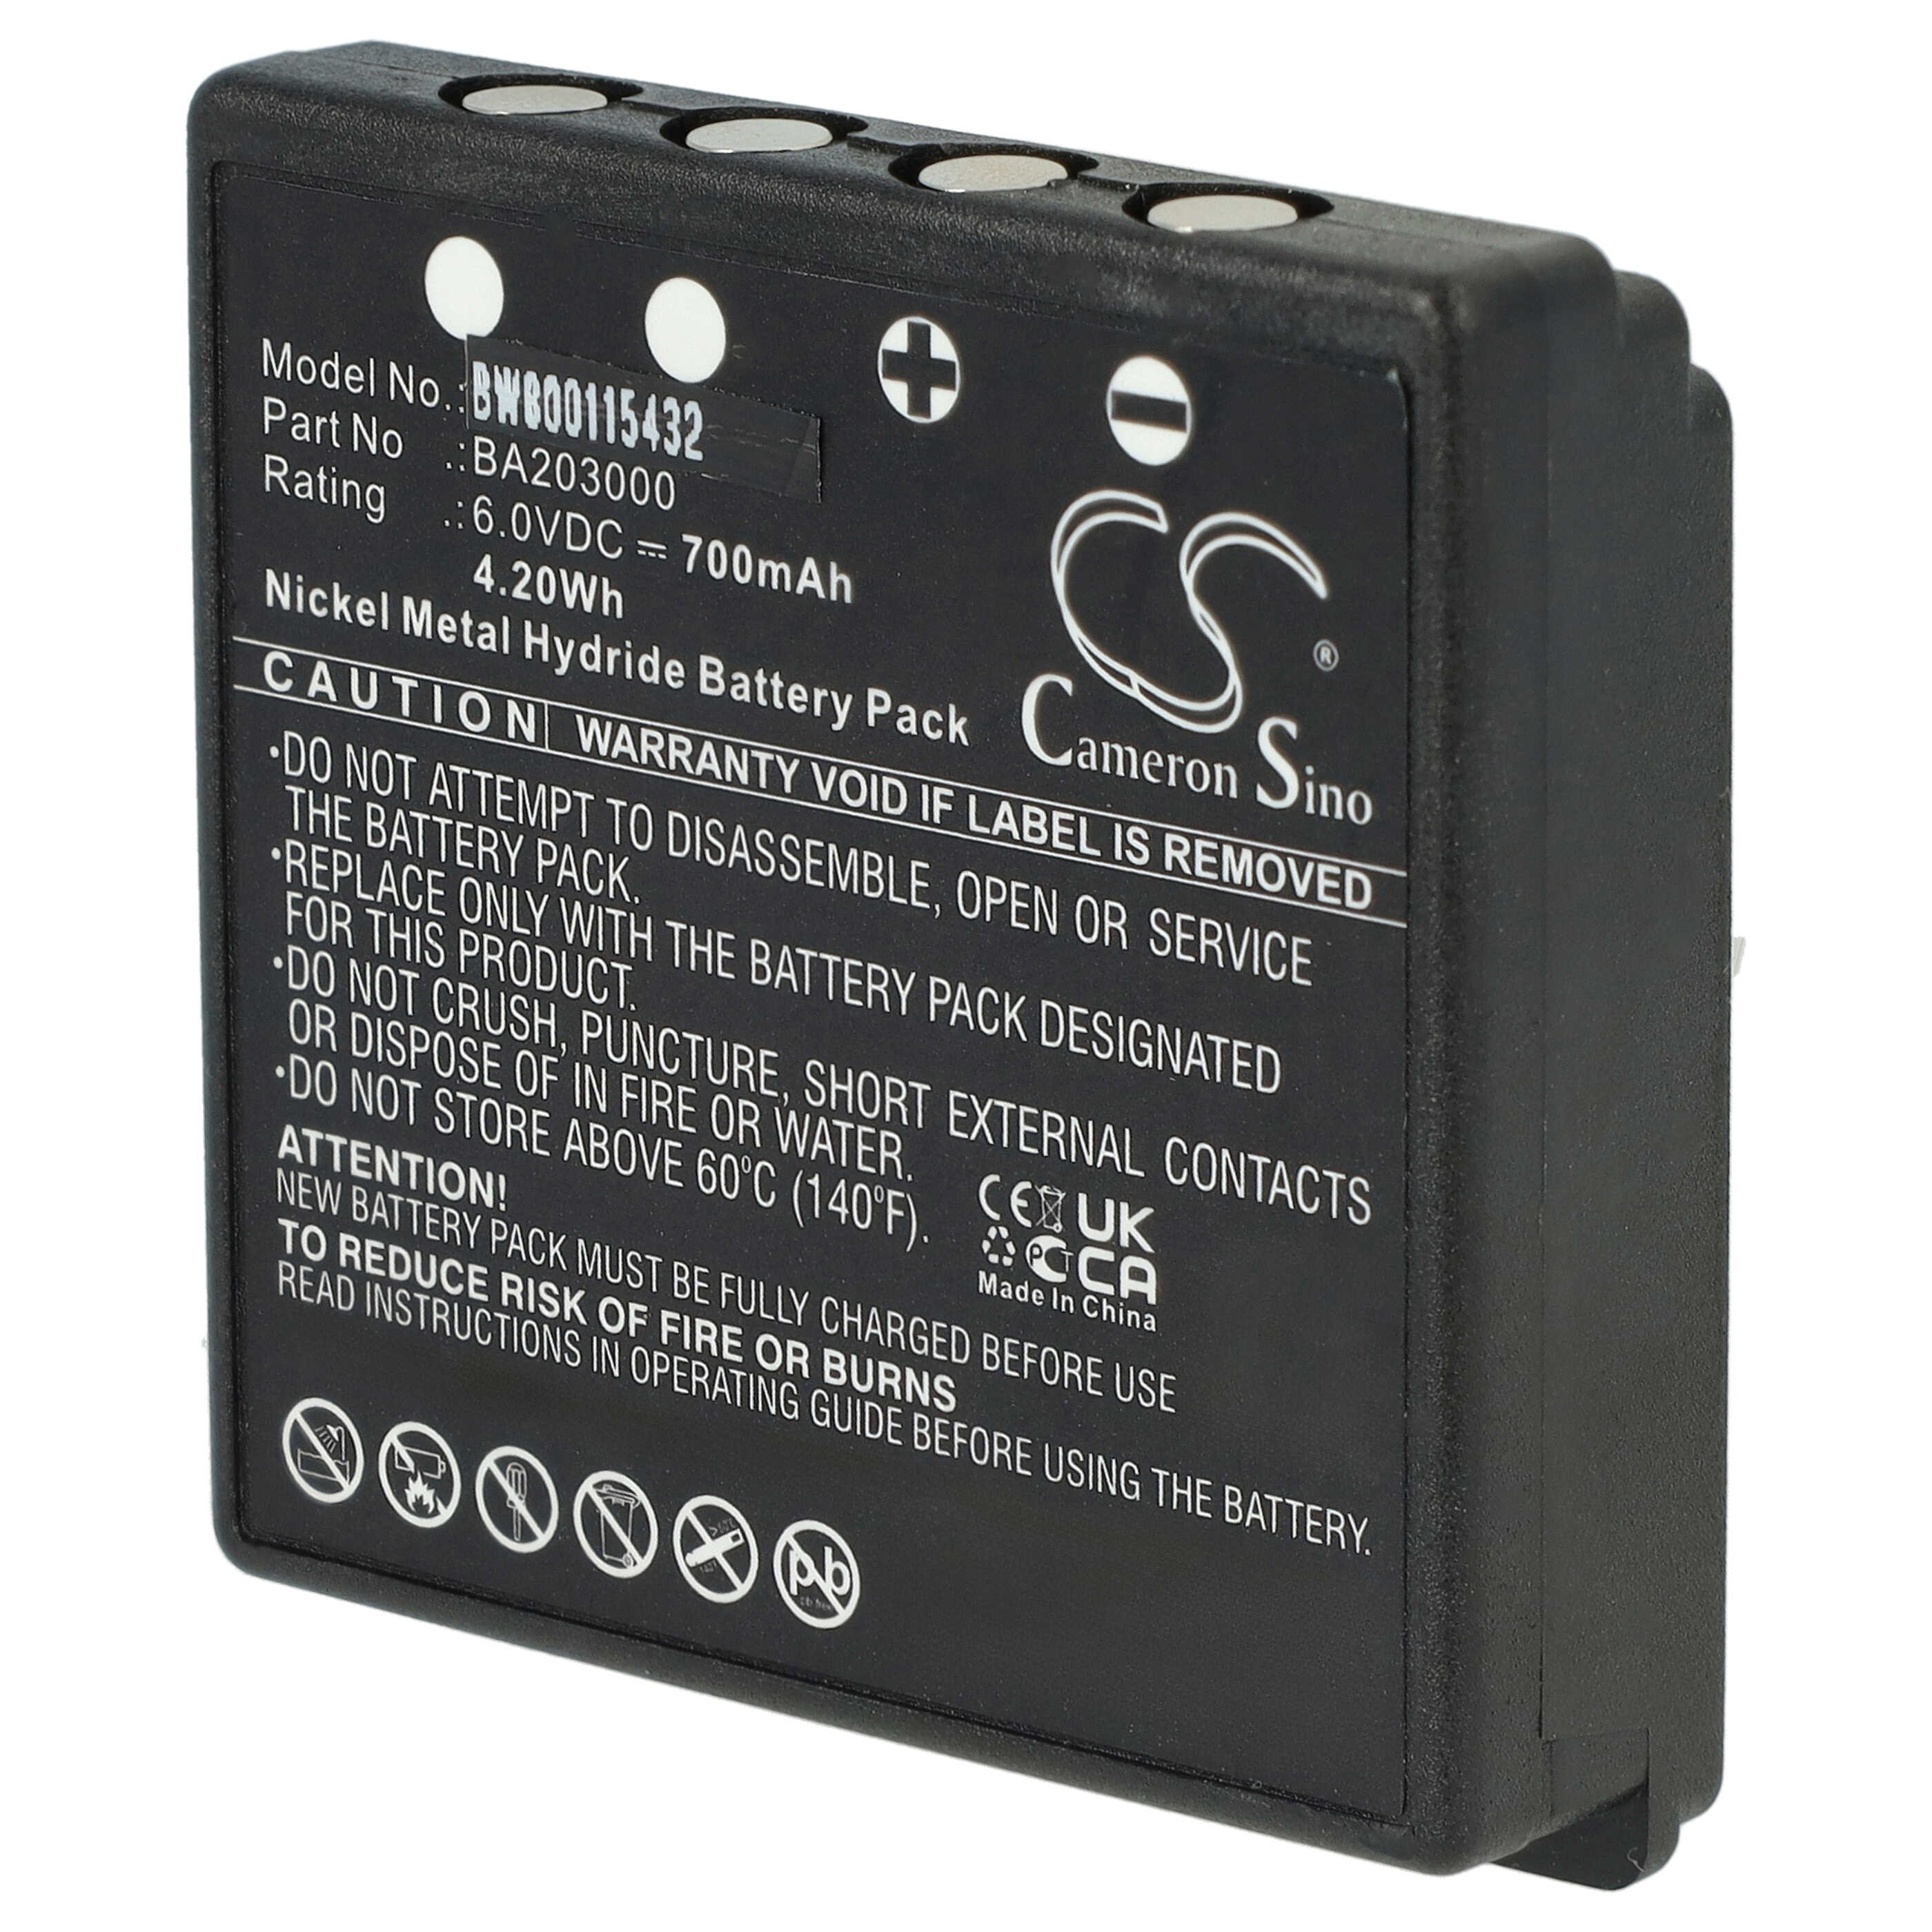 Batteria per radiocomando industriale sostituisce HBC BA203000, BA205030, 005-01-00615 HBC - 700mAh 6V NiMH